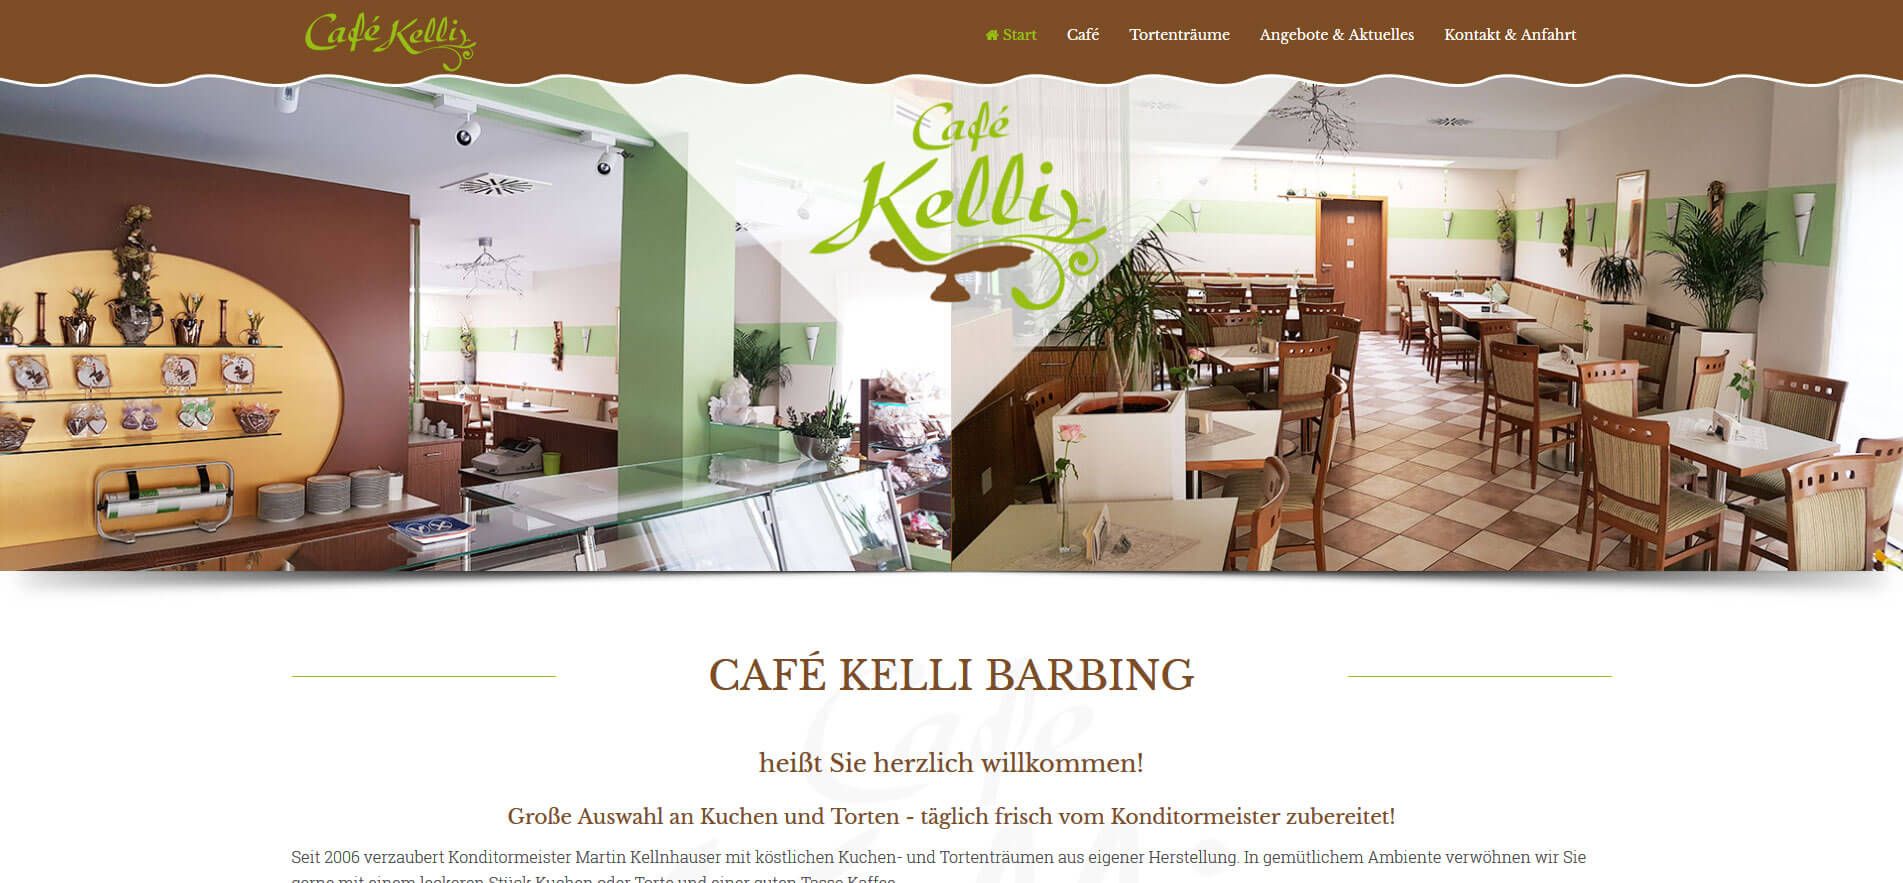 Cafe Kelli